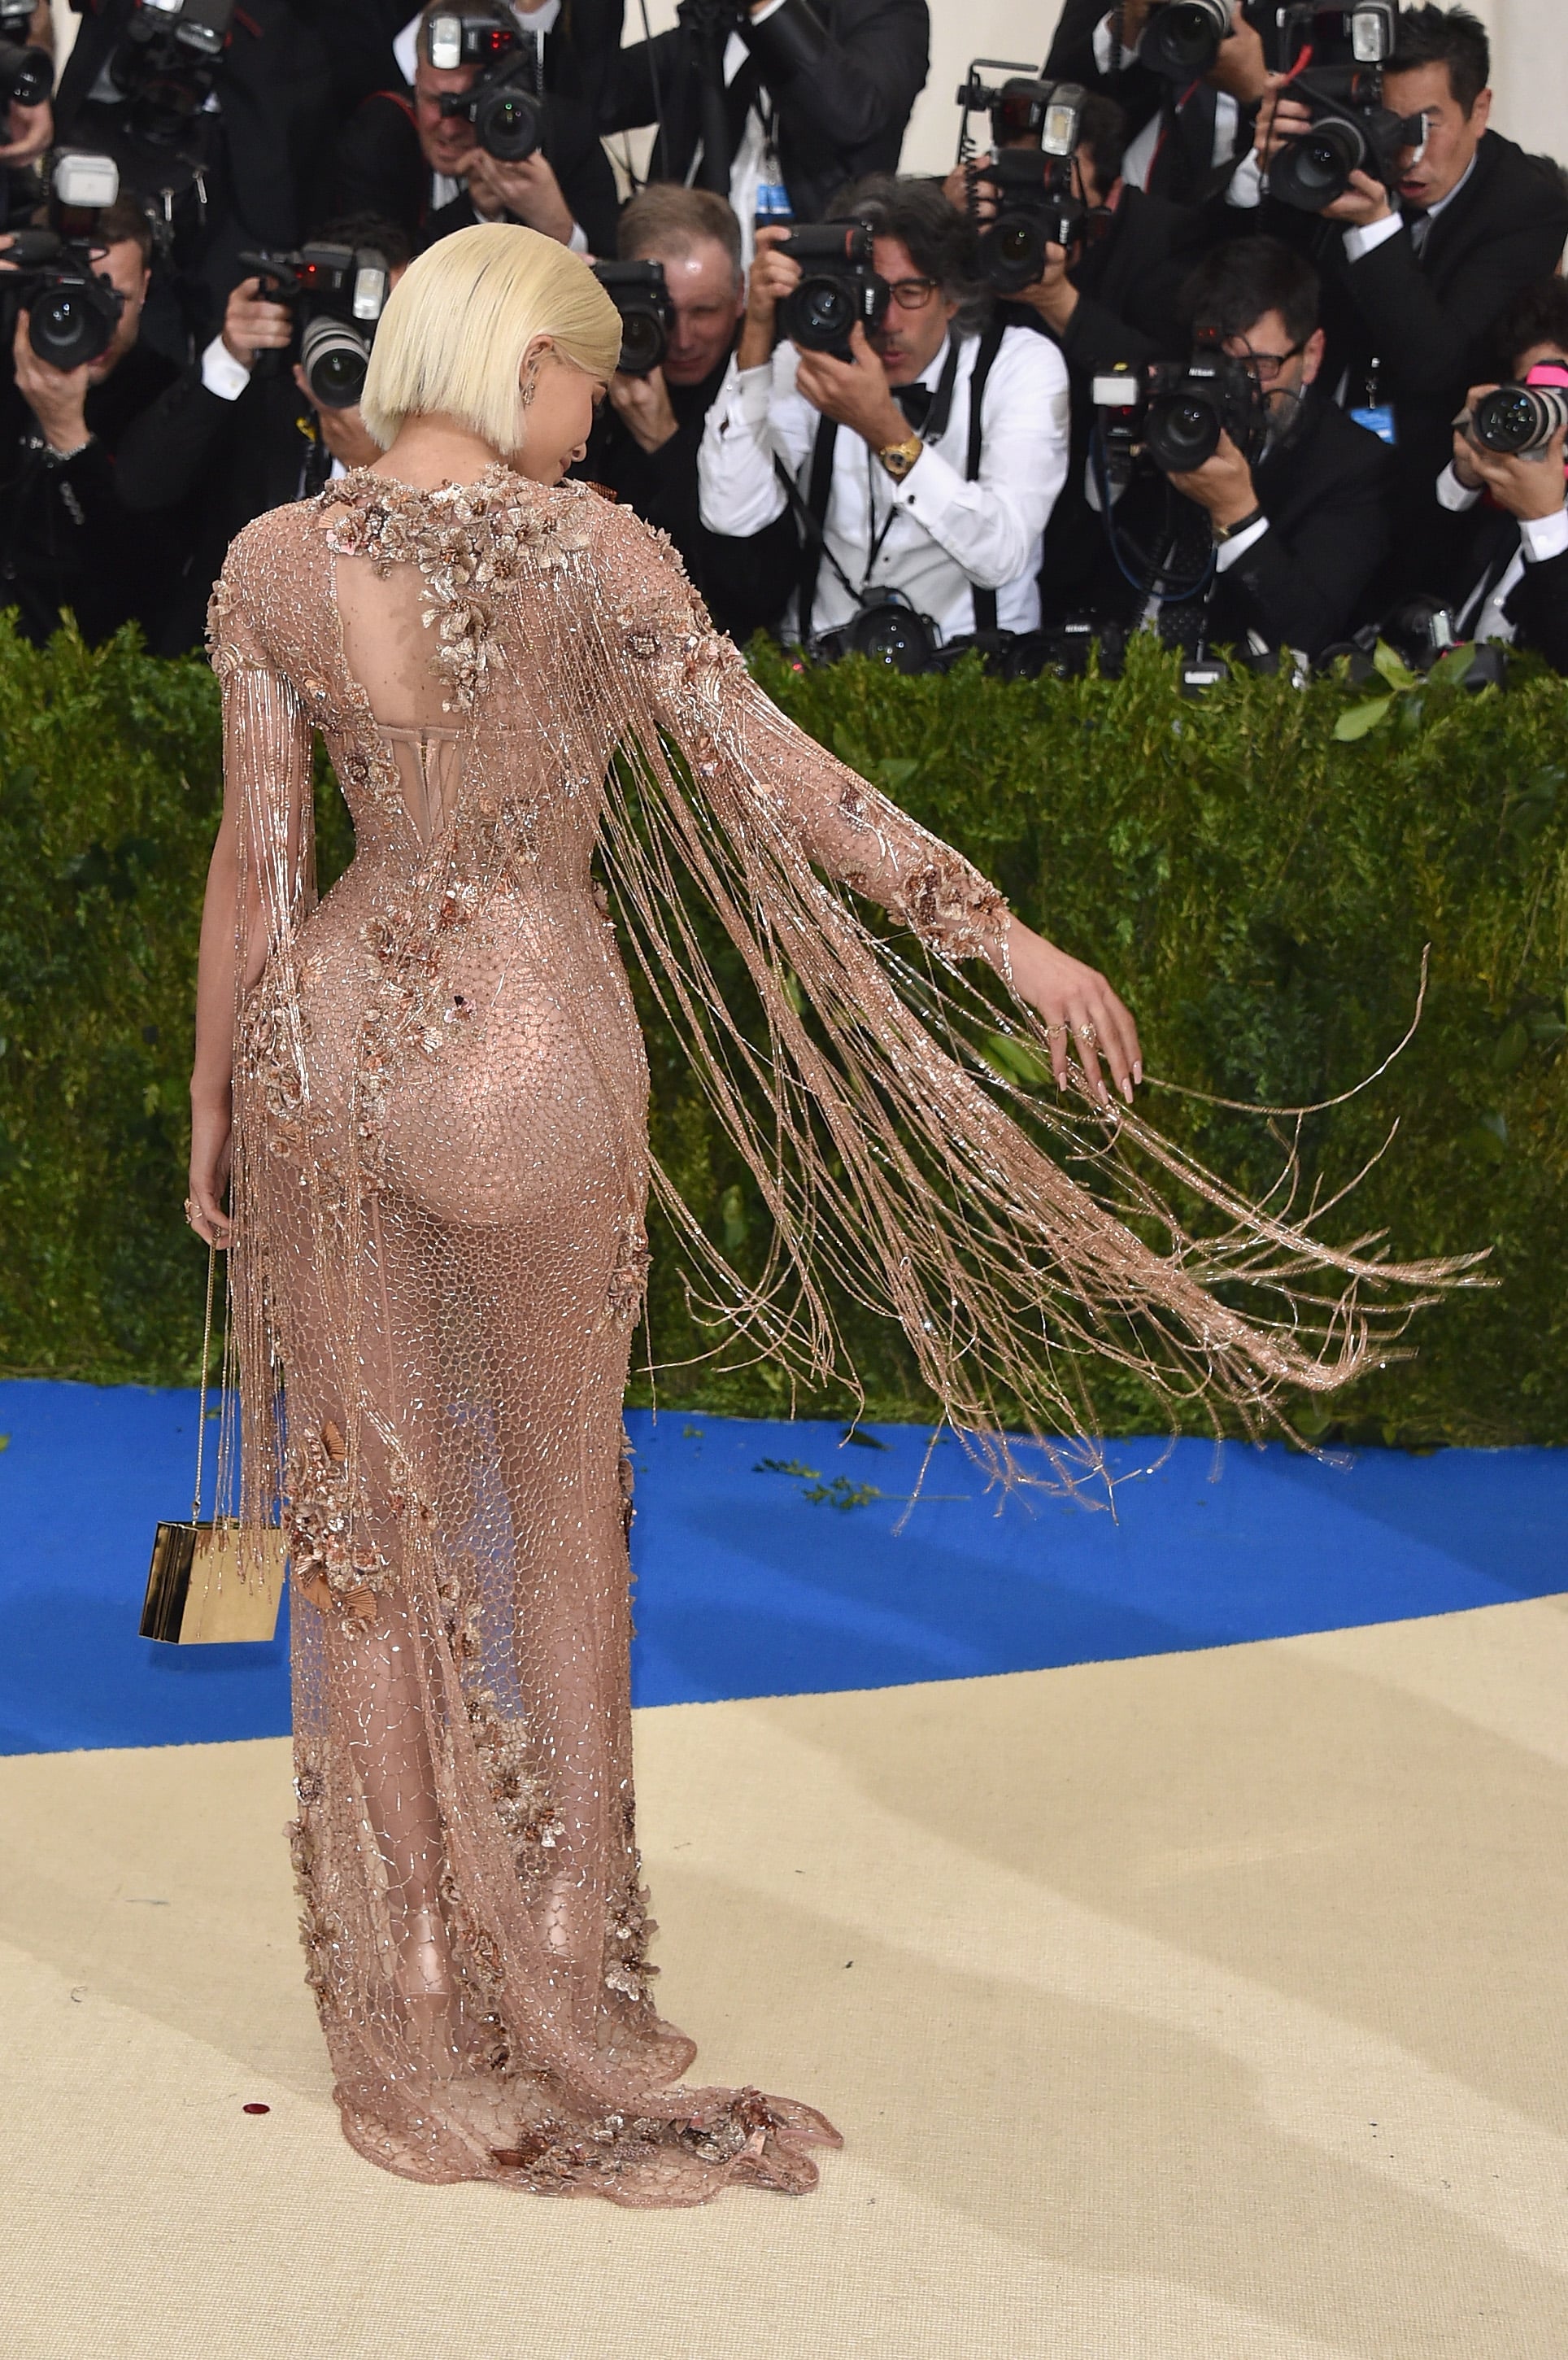 Met Gala 2017: Kylie Jenner Wears Sheer Versace Dress